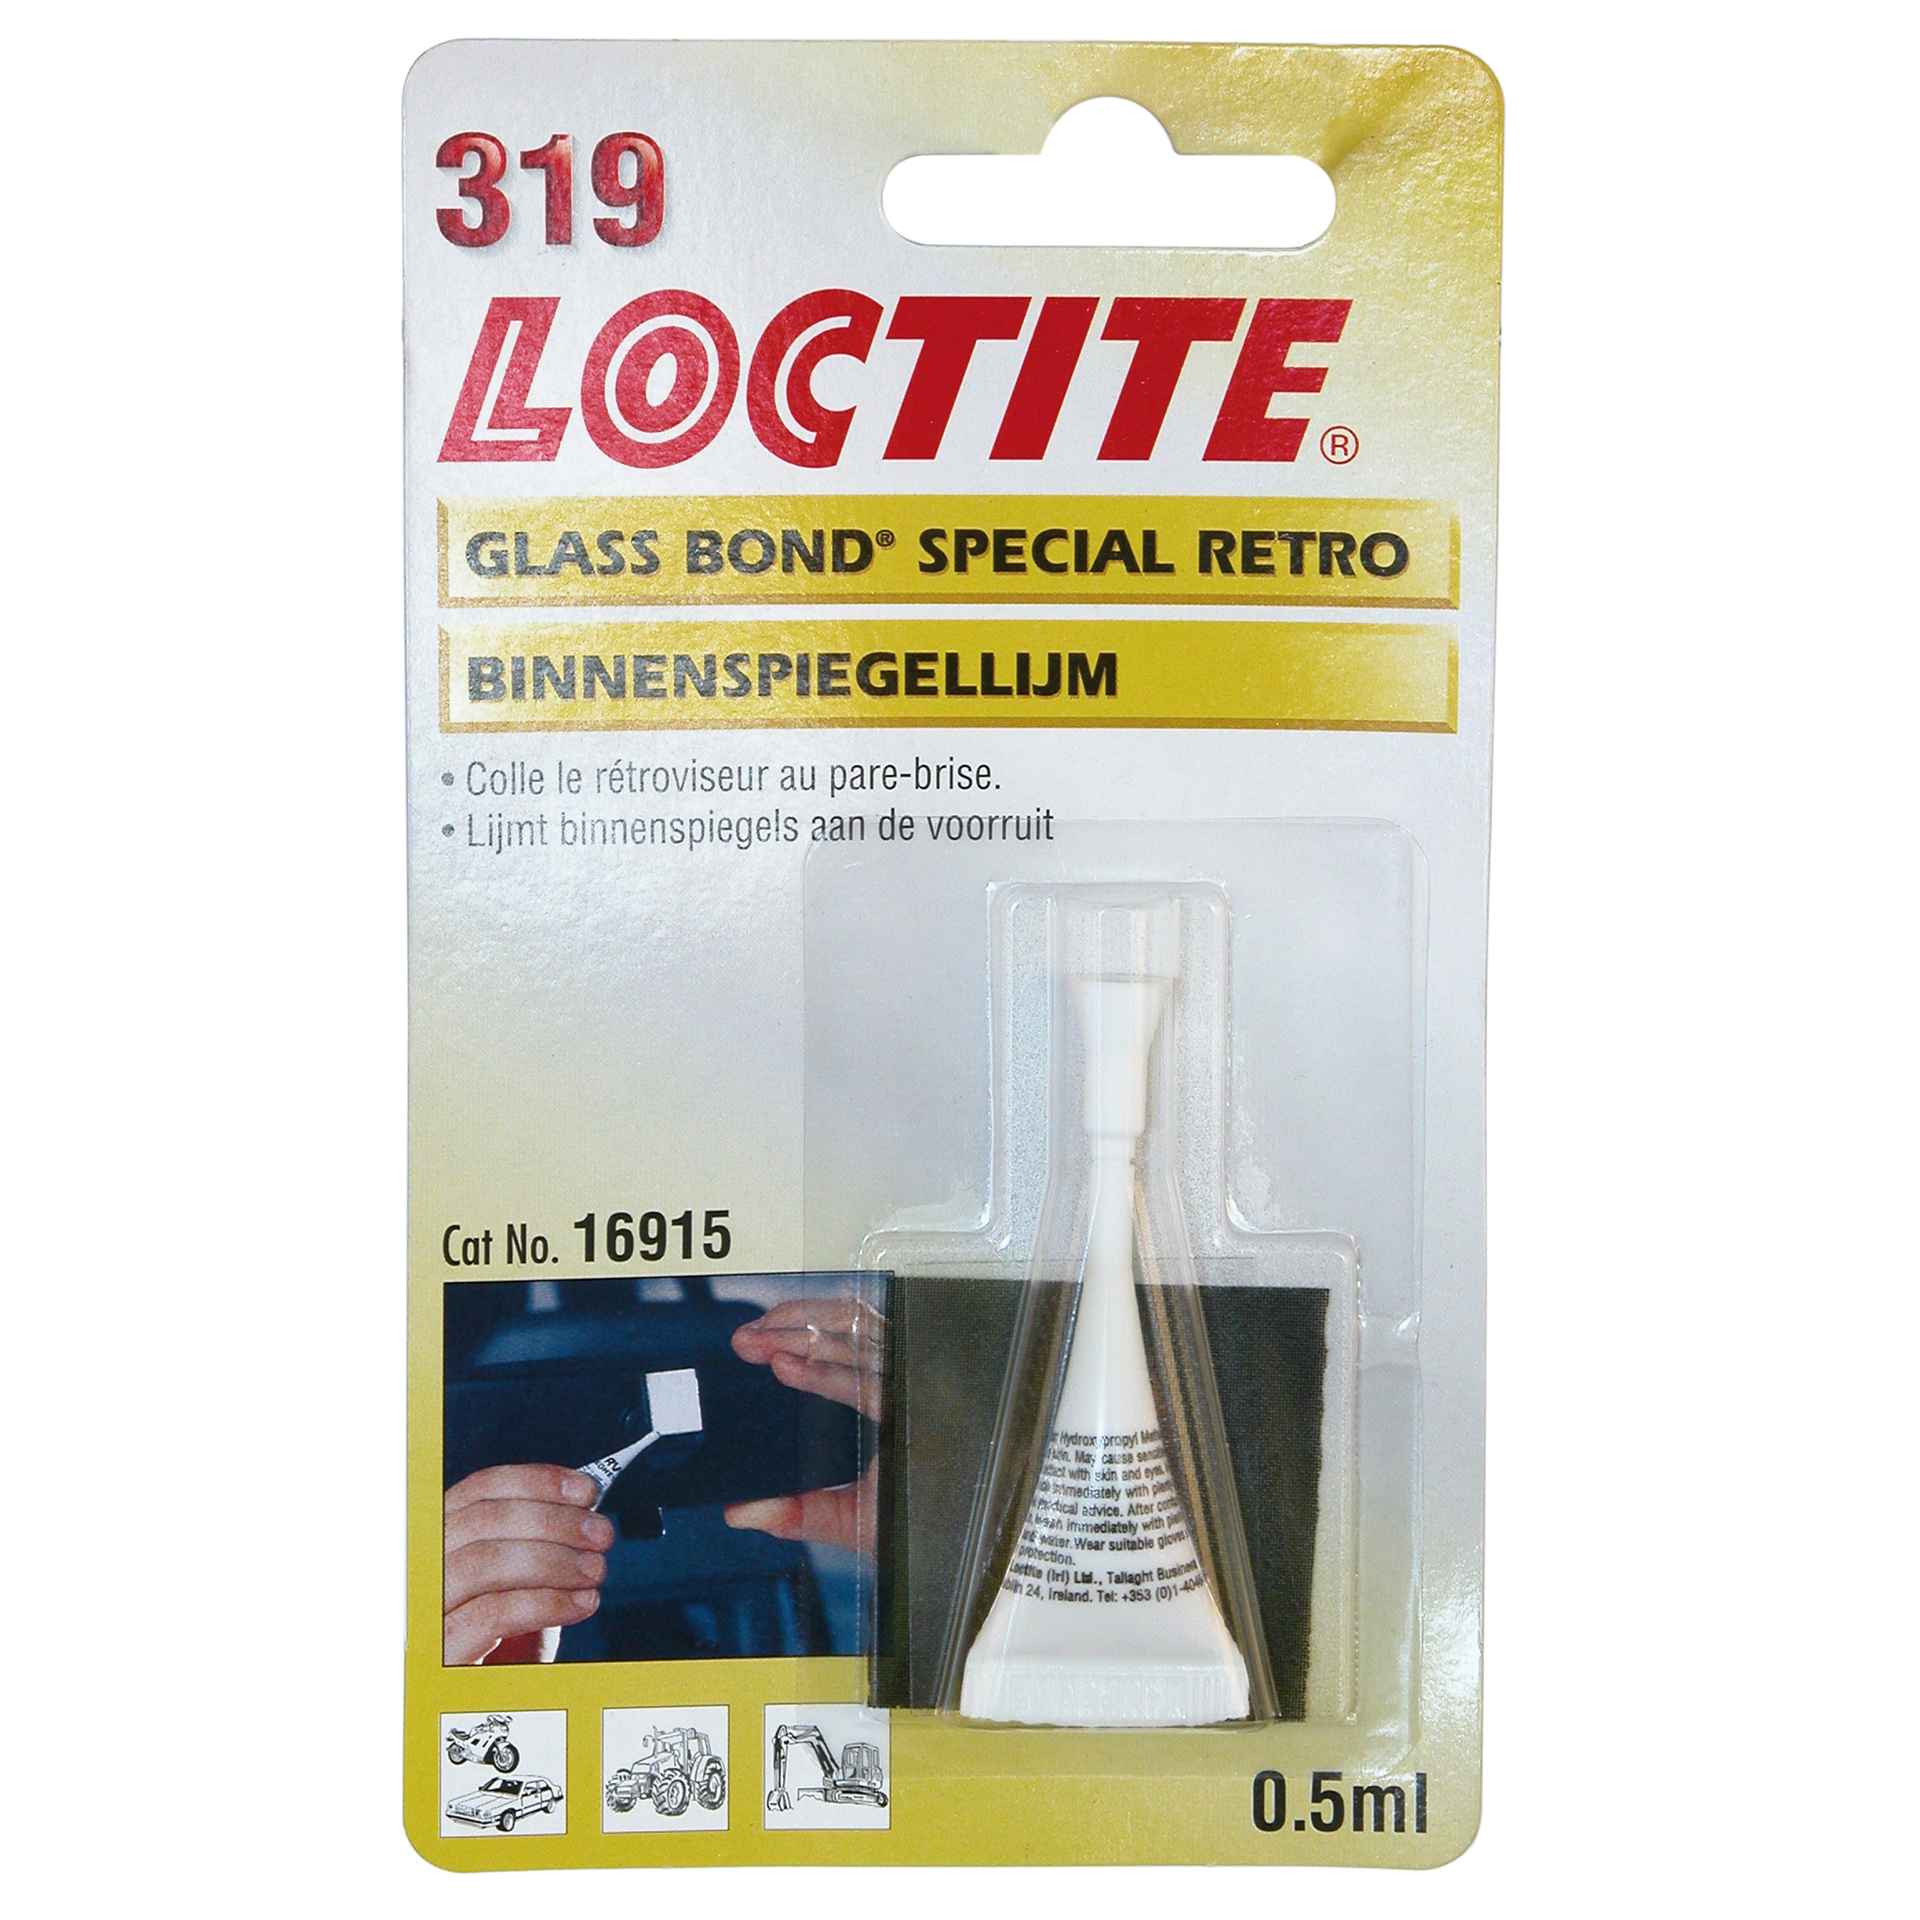 Loctite 319 Binnenspiegellijm 0.5ml (1831734)